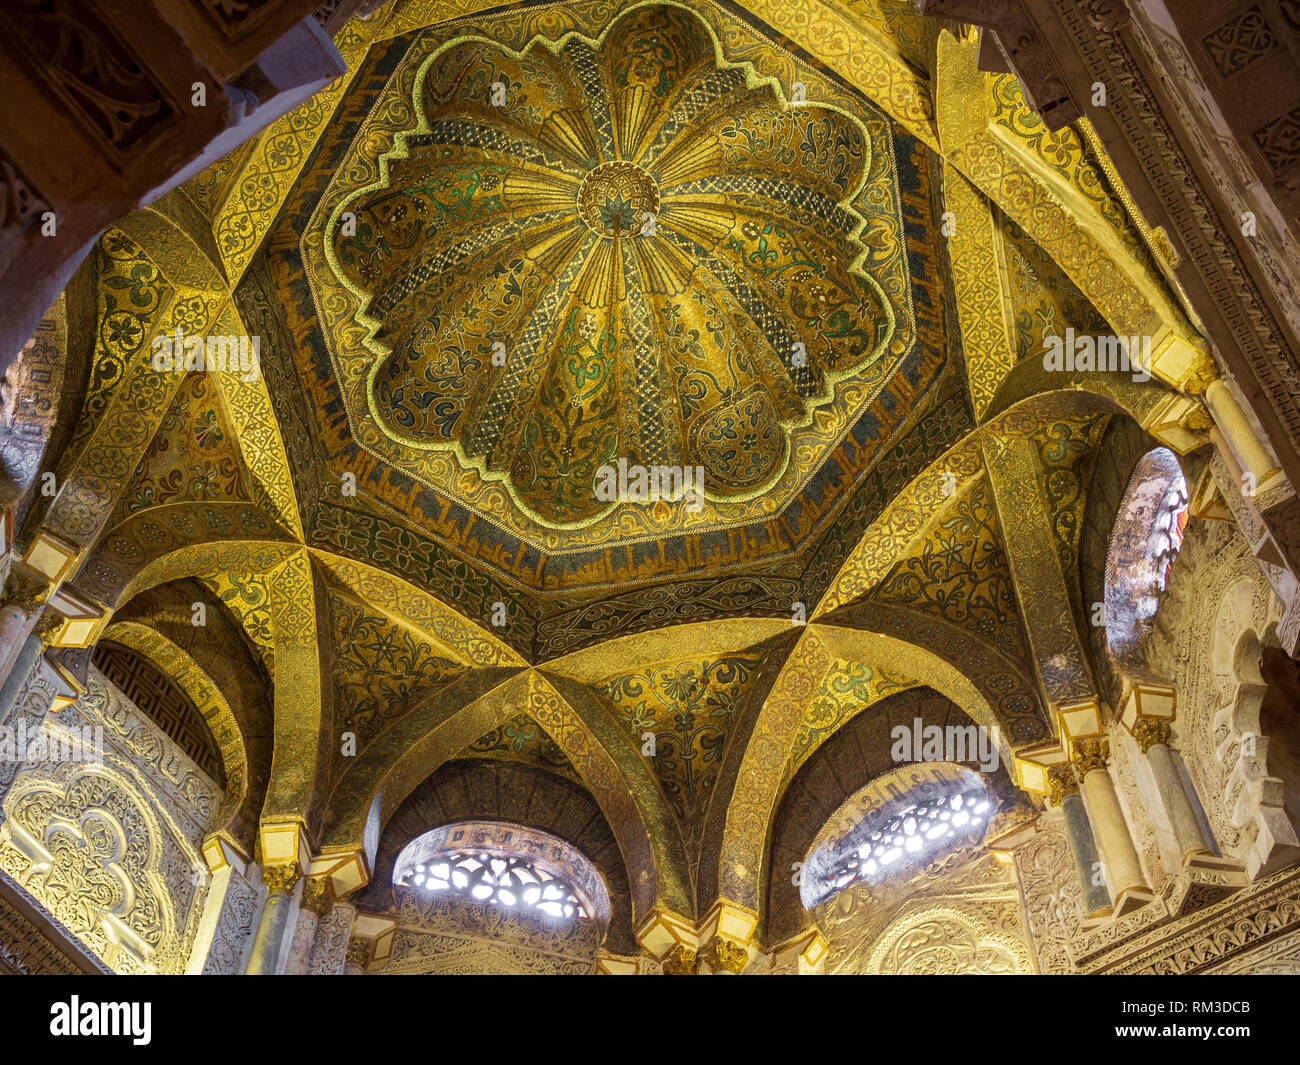 La cupola della maksura all'interno della Cattedrale Mezquita di Cordova, Spagna, un ex royal enclosure dove califfi pregato. Costruito come una moschea in 785, poi successivamente conver Foto Stock